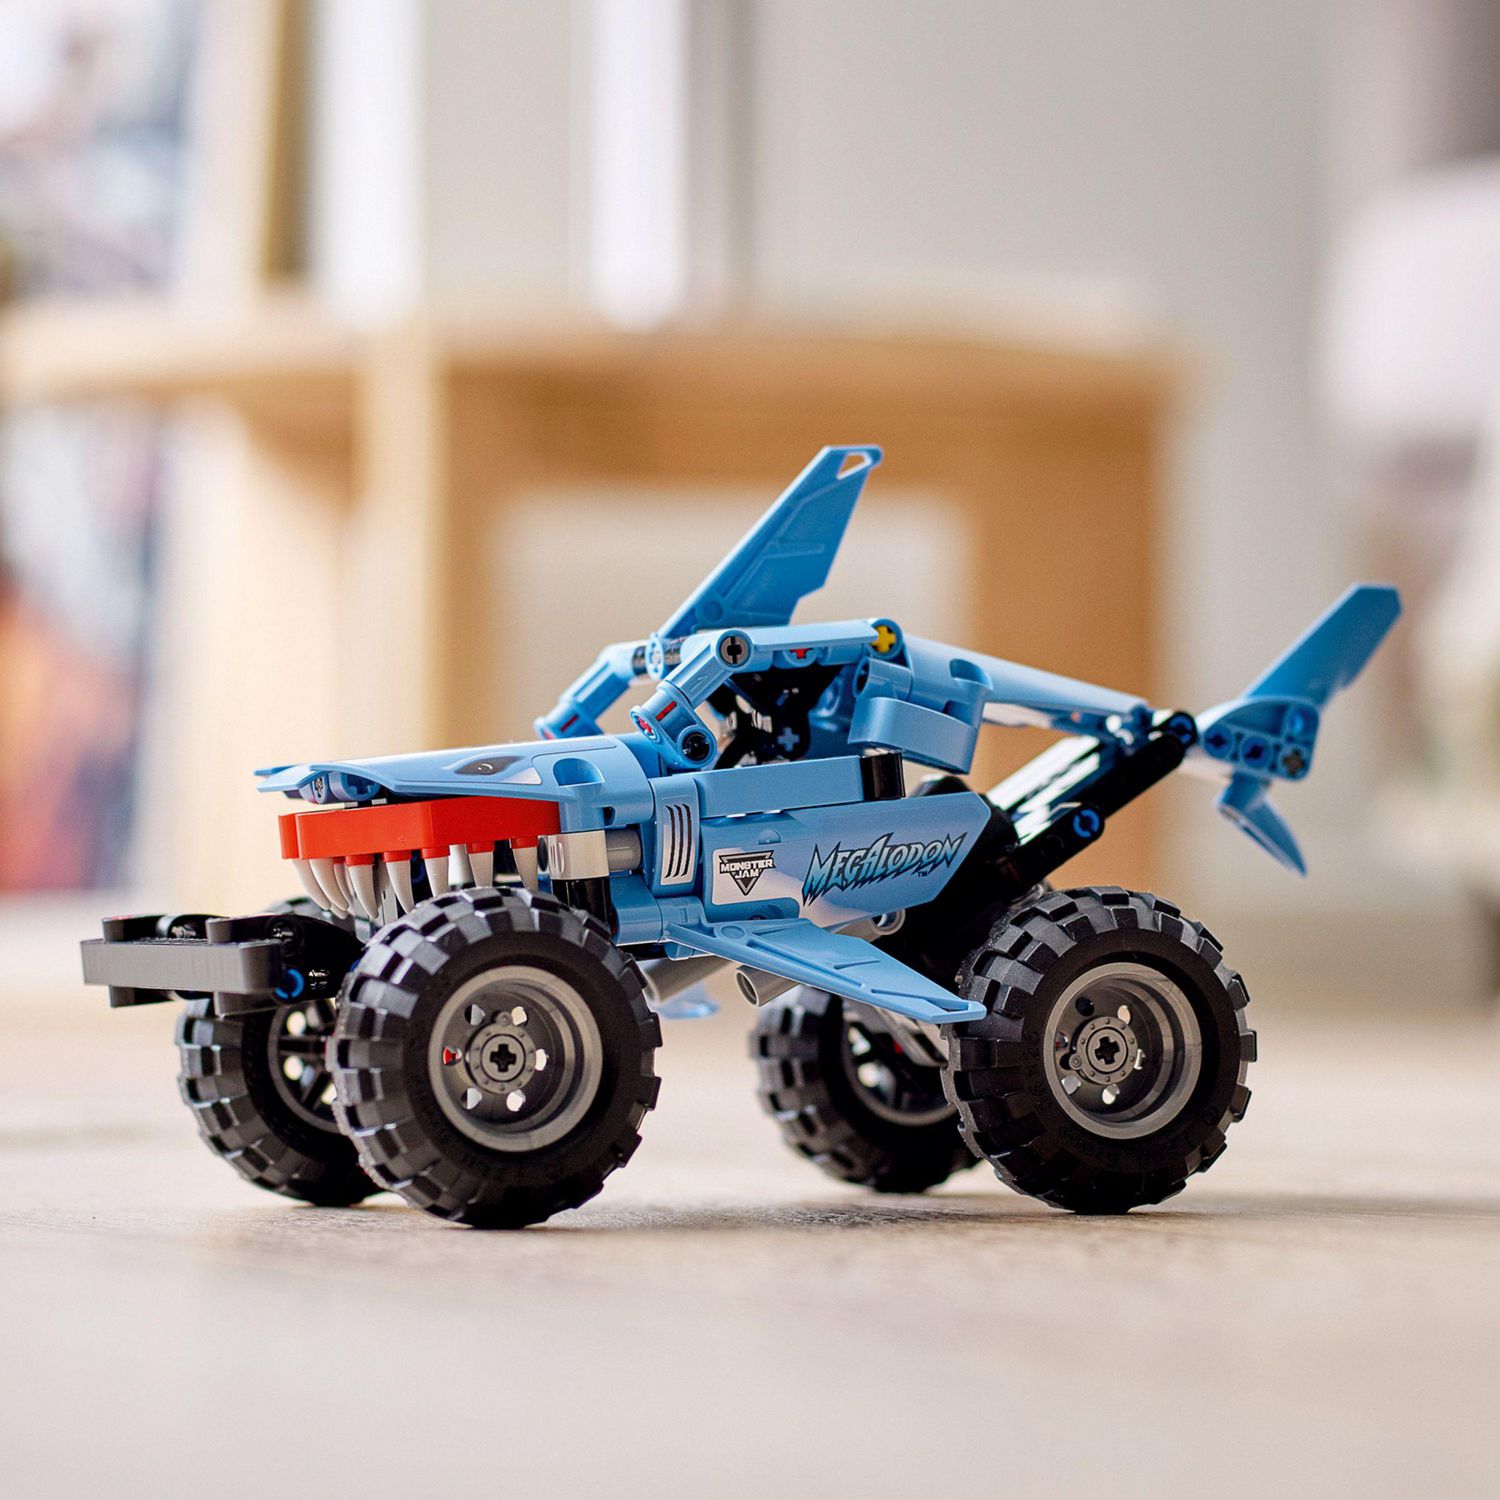 LEGO Technic Monster Jam Megalodon 42134 Model Toy Building Kit